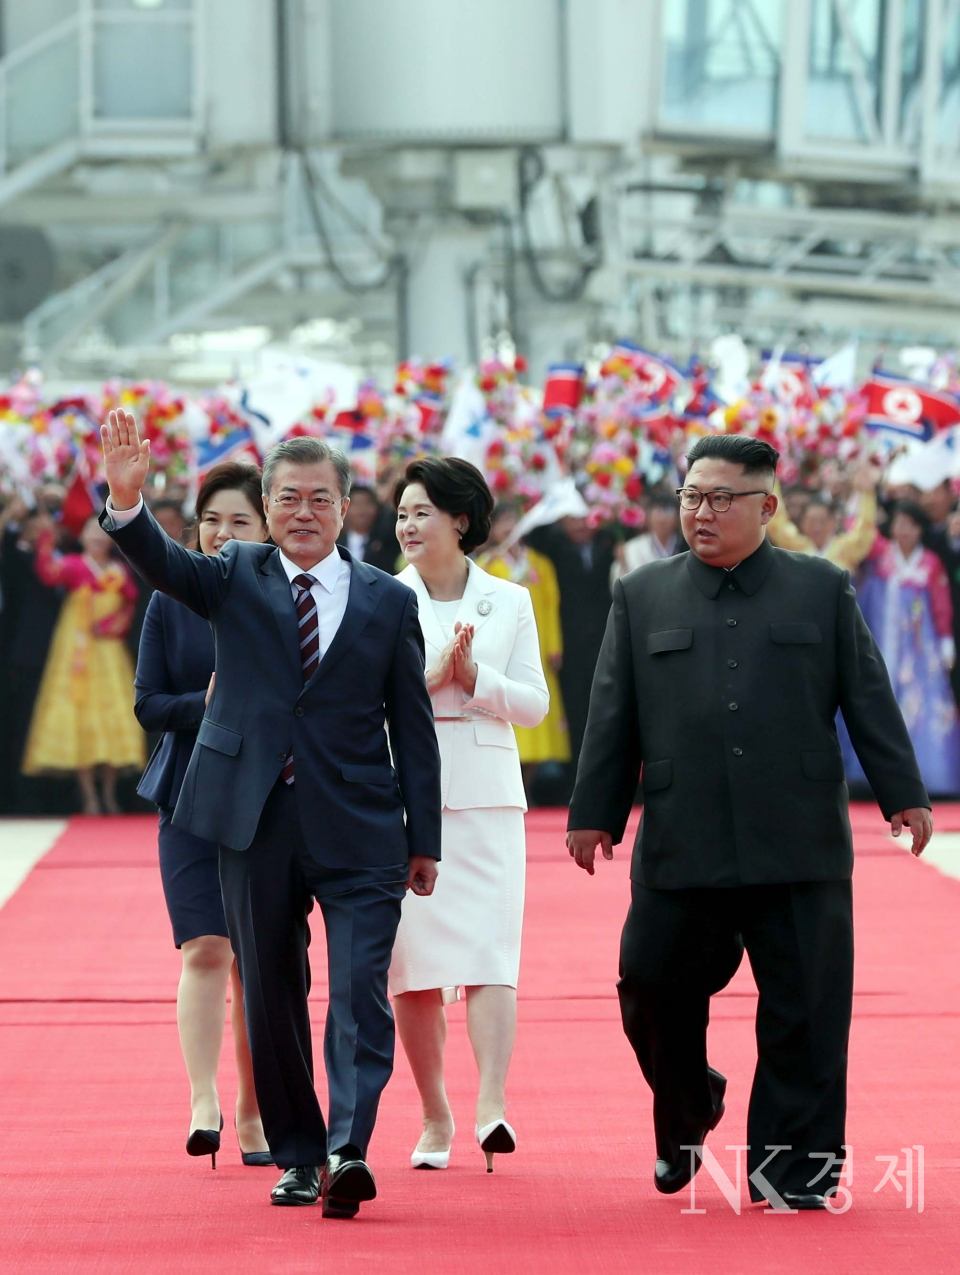 9월 18일 평양에 도착한 문재인 대통령이 김정은 북한 로동당 위원장과 환영행사를 위해 이동하고 있다.